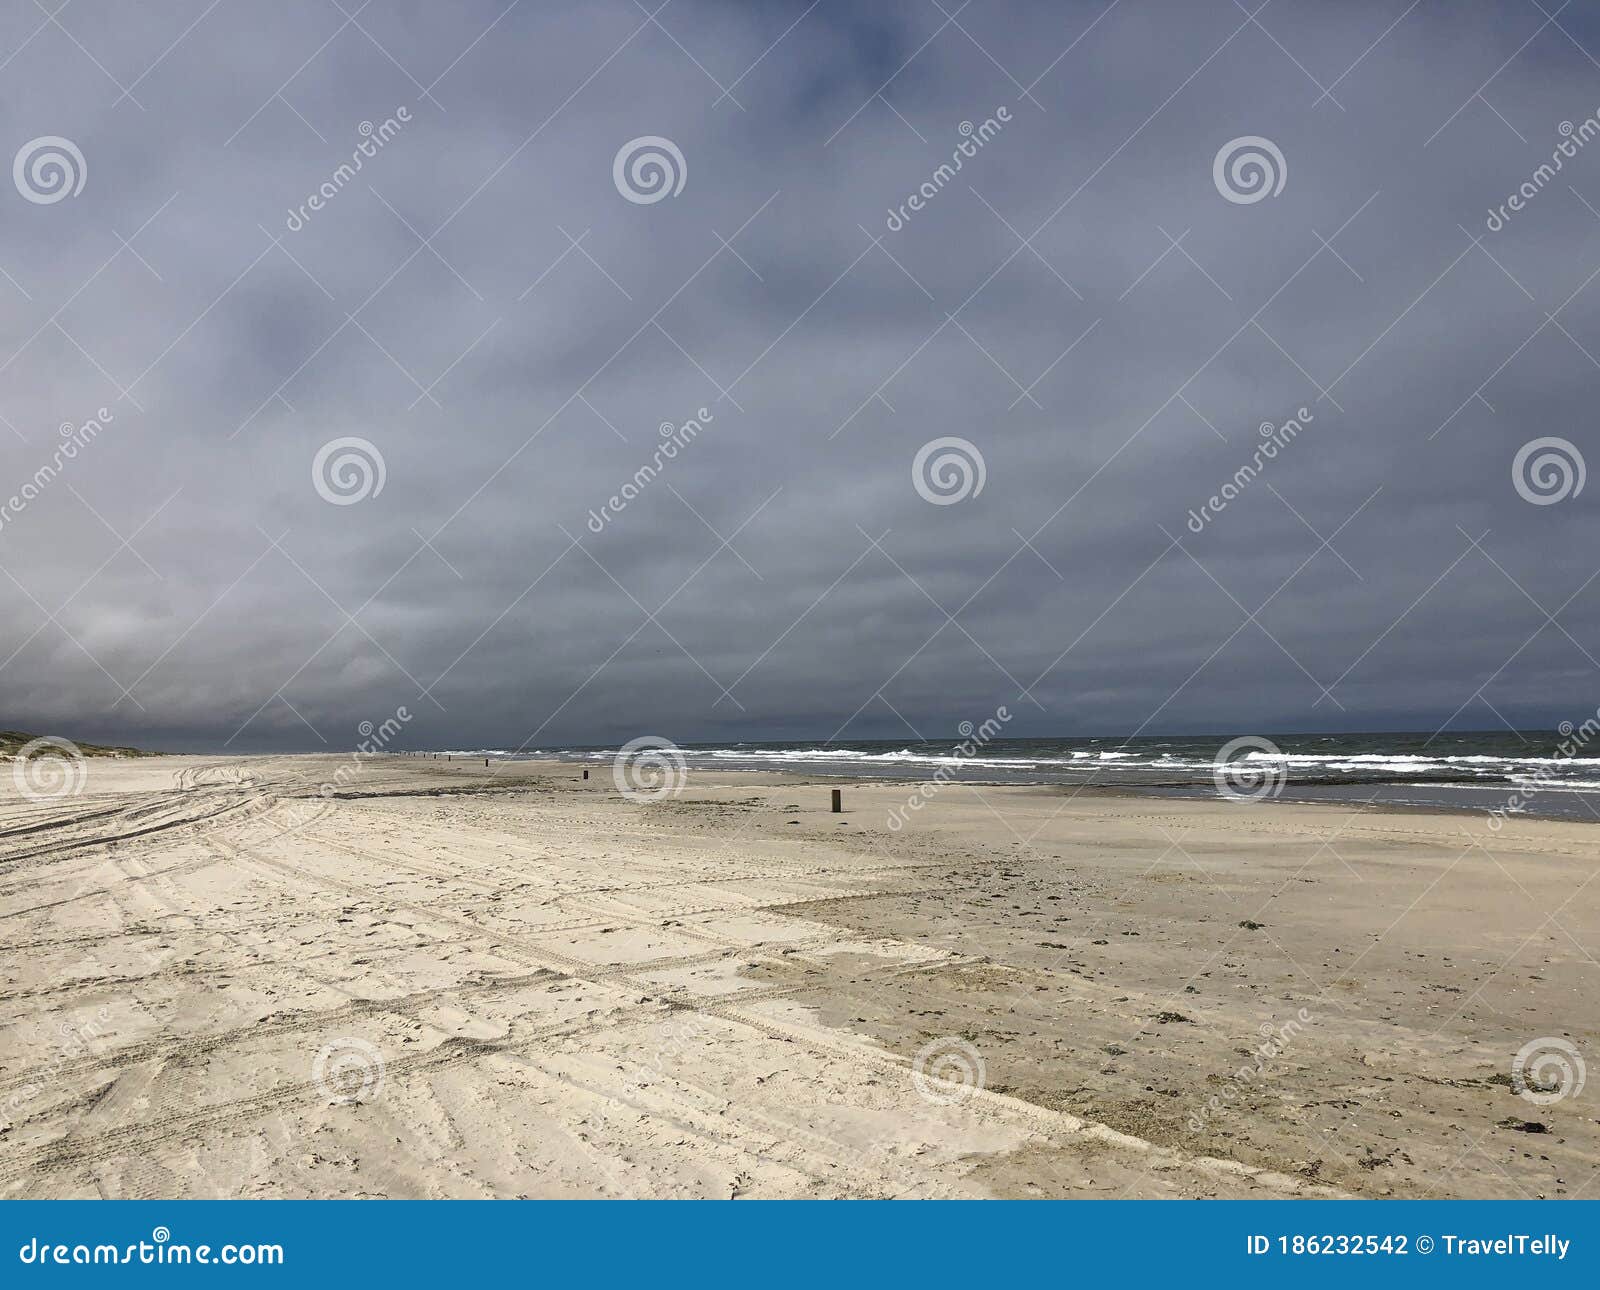 dark clouds above the beach on vlieland